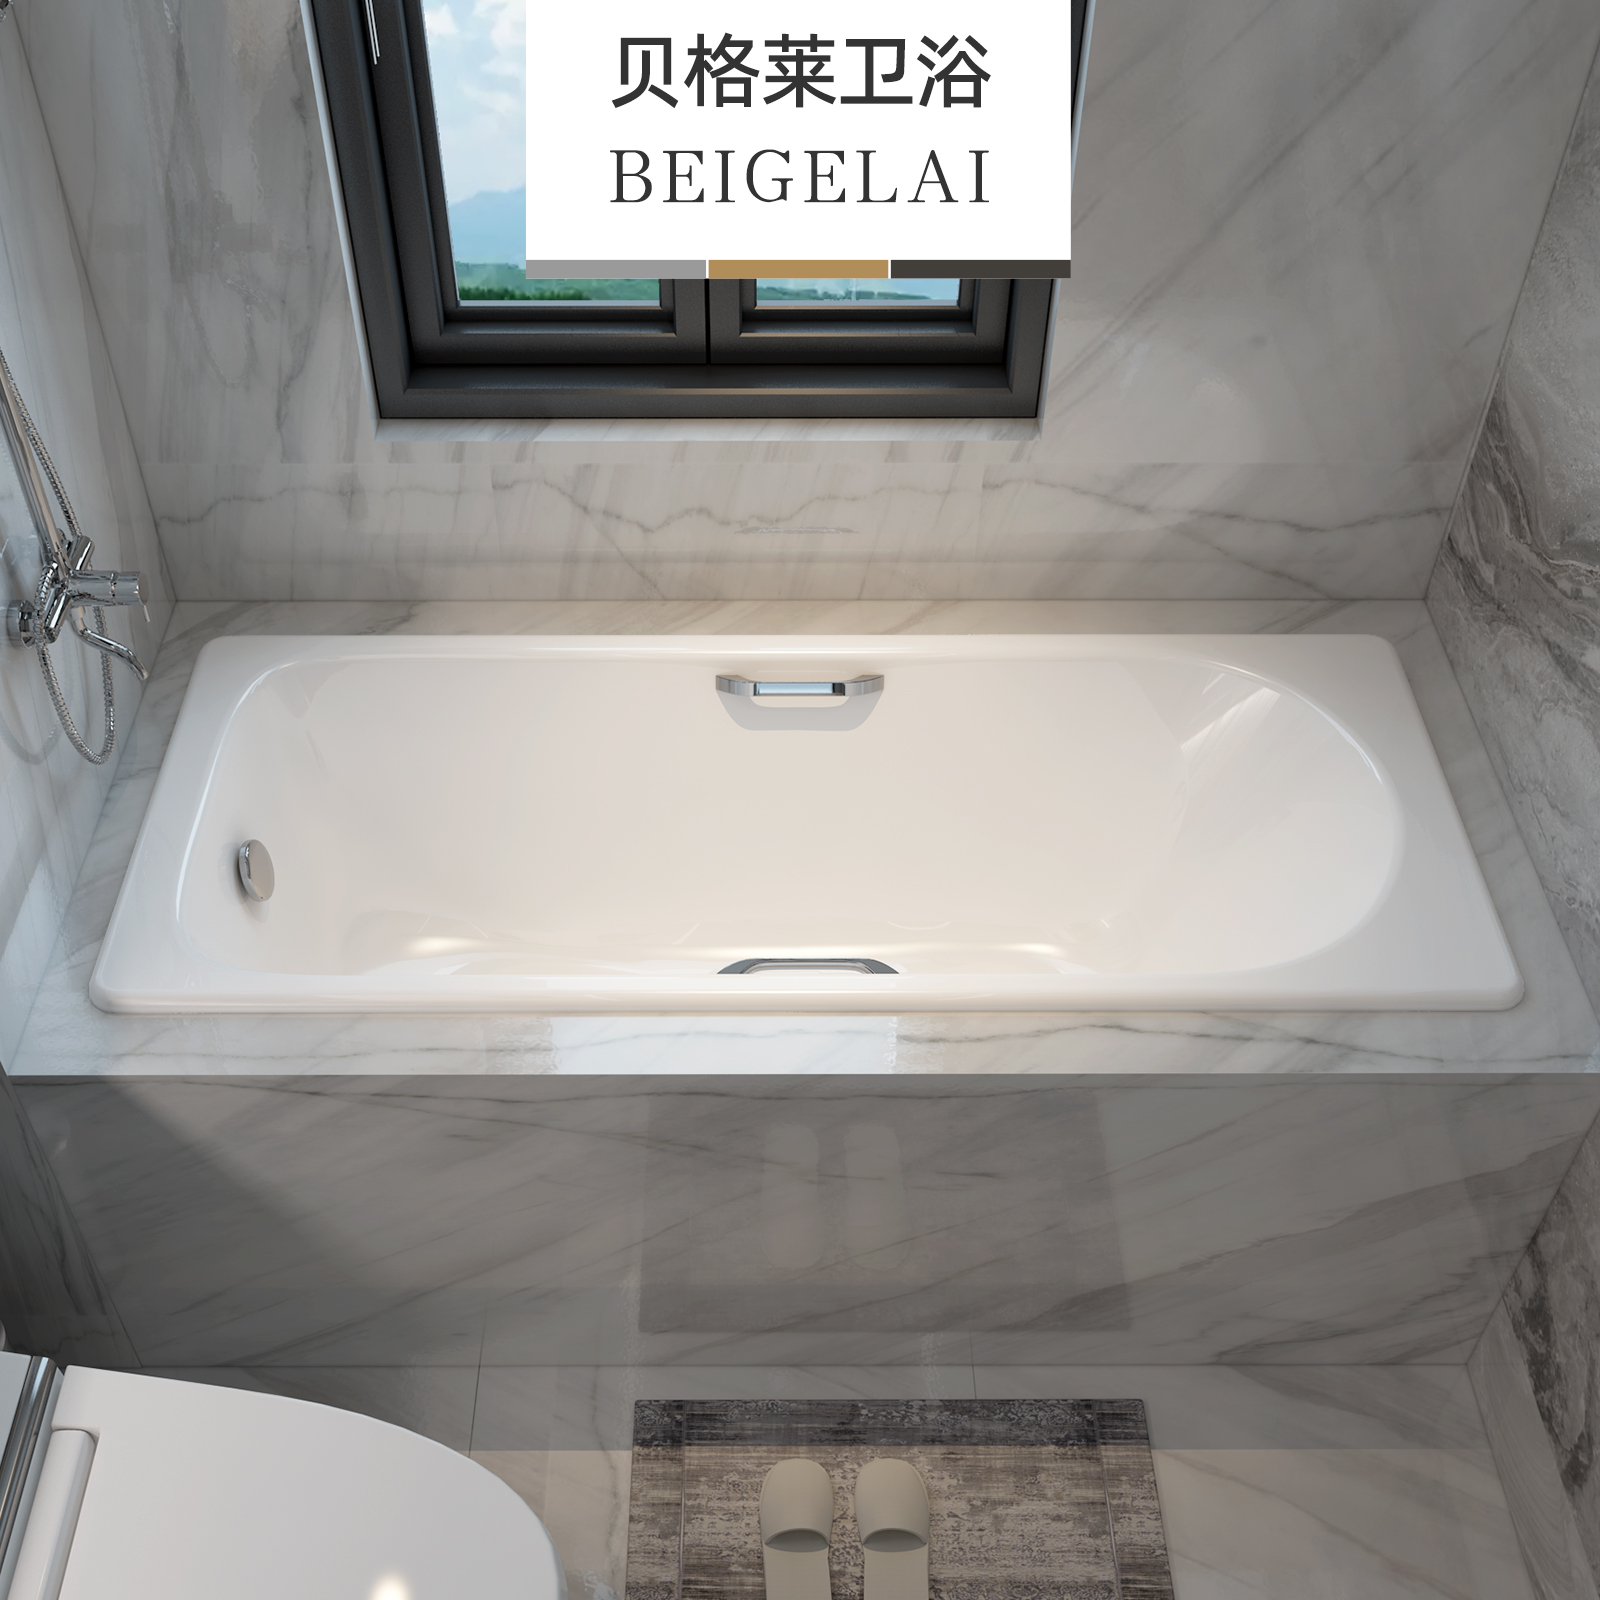 卫生间单人方形泡澡铸铁陶瓷嵌入式浴缸家用小户型成人搪瓷贝格莱